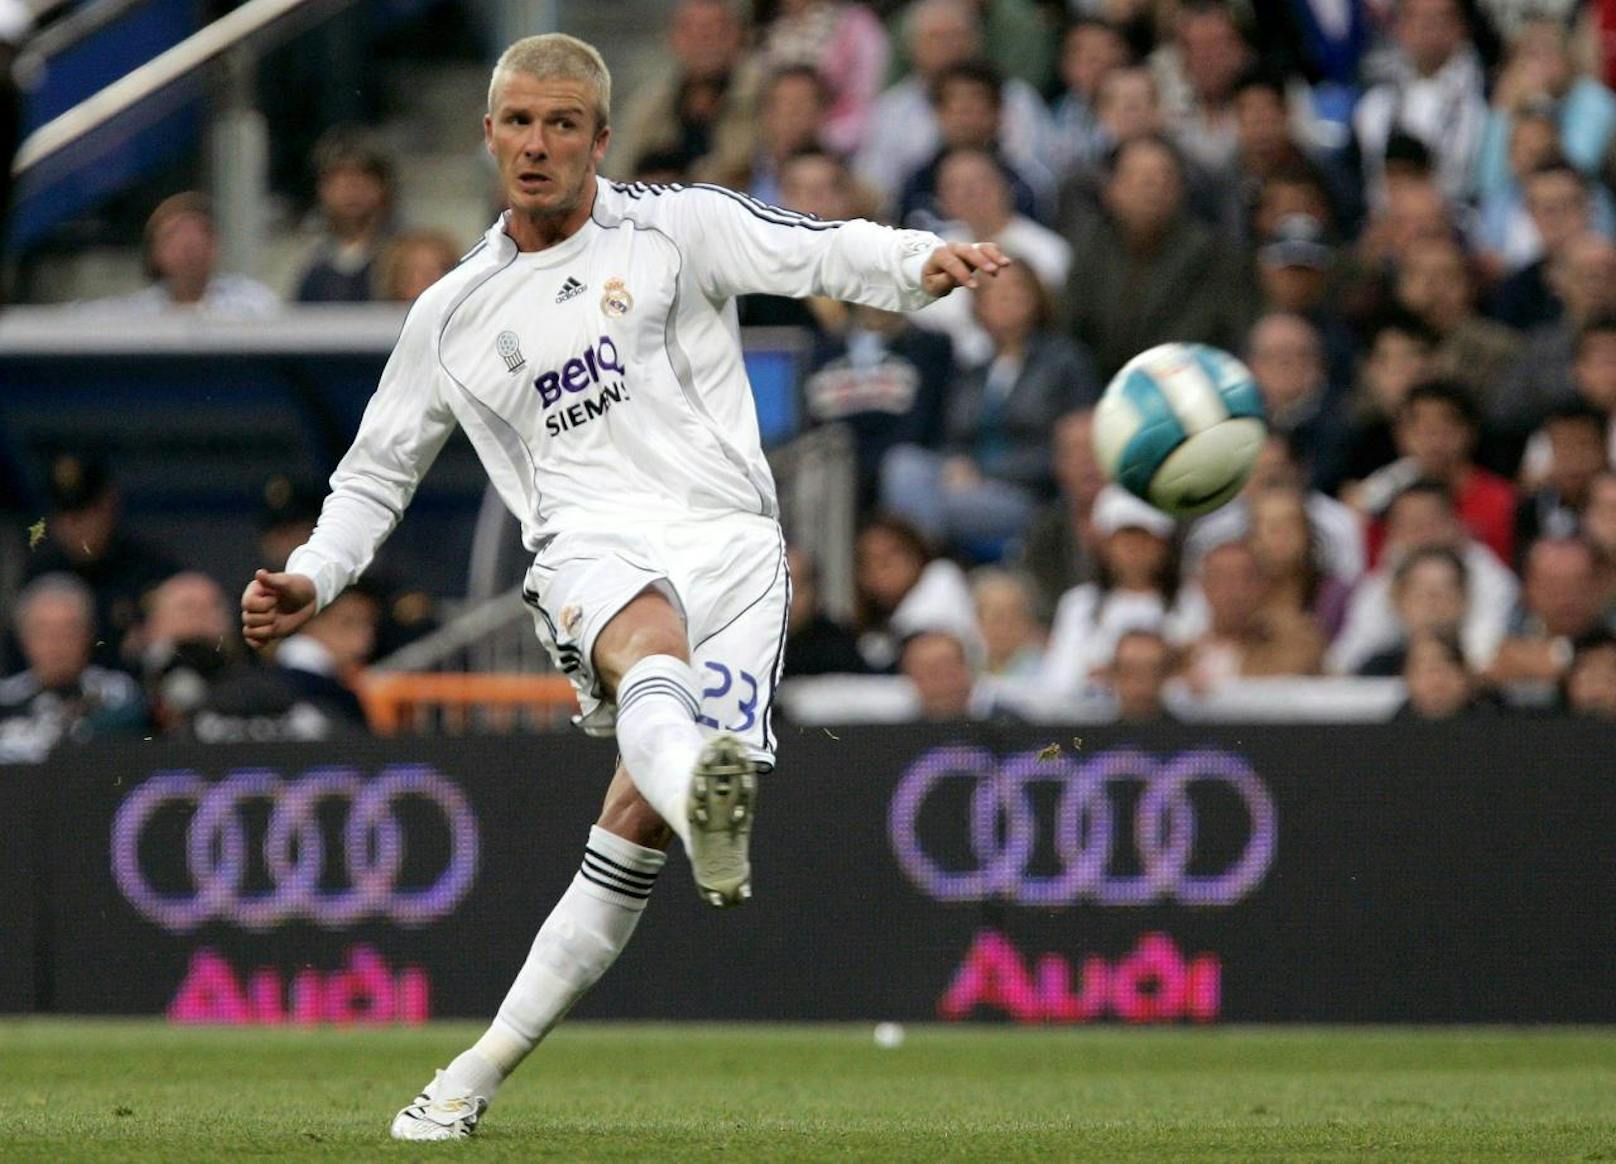 Platz 8: David Beckham (Fußball)
Verdienst: 800 Millionen Dollar